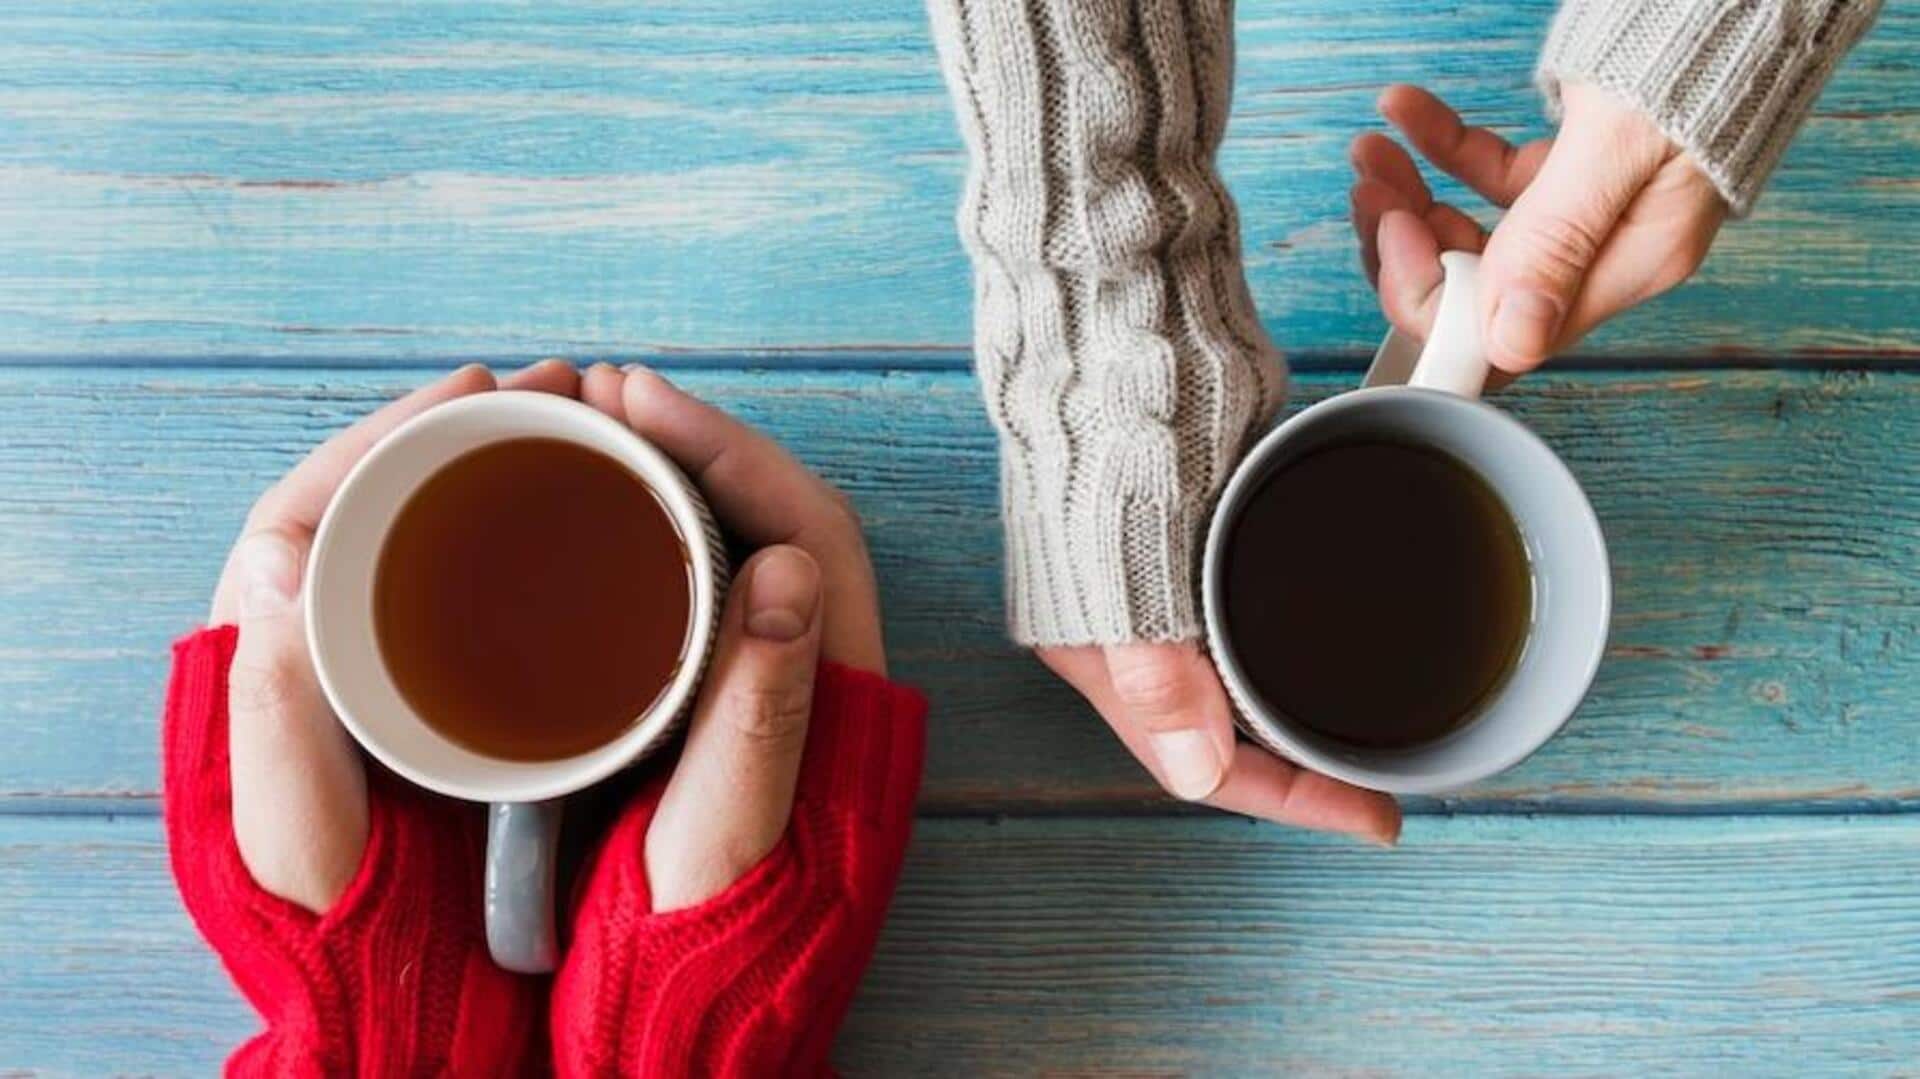 चाय बनाम कॉफी: किसका चयन करना होगा स्वास्थ्य के लिए बेहतर? यहां जानिए